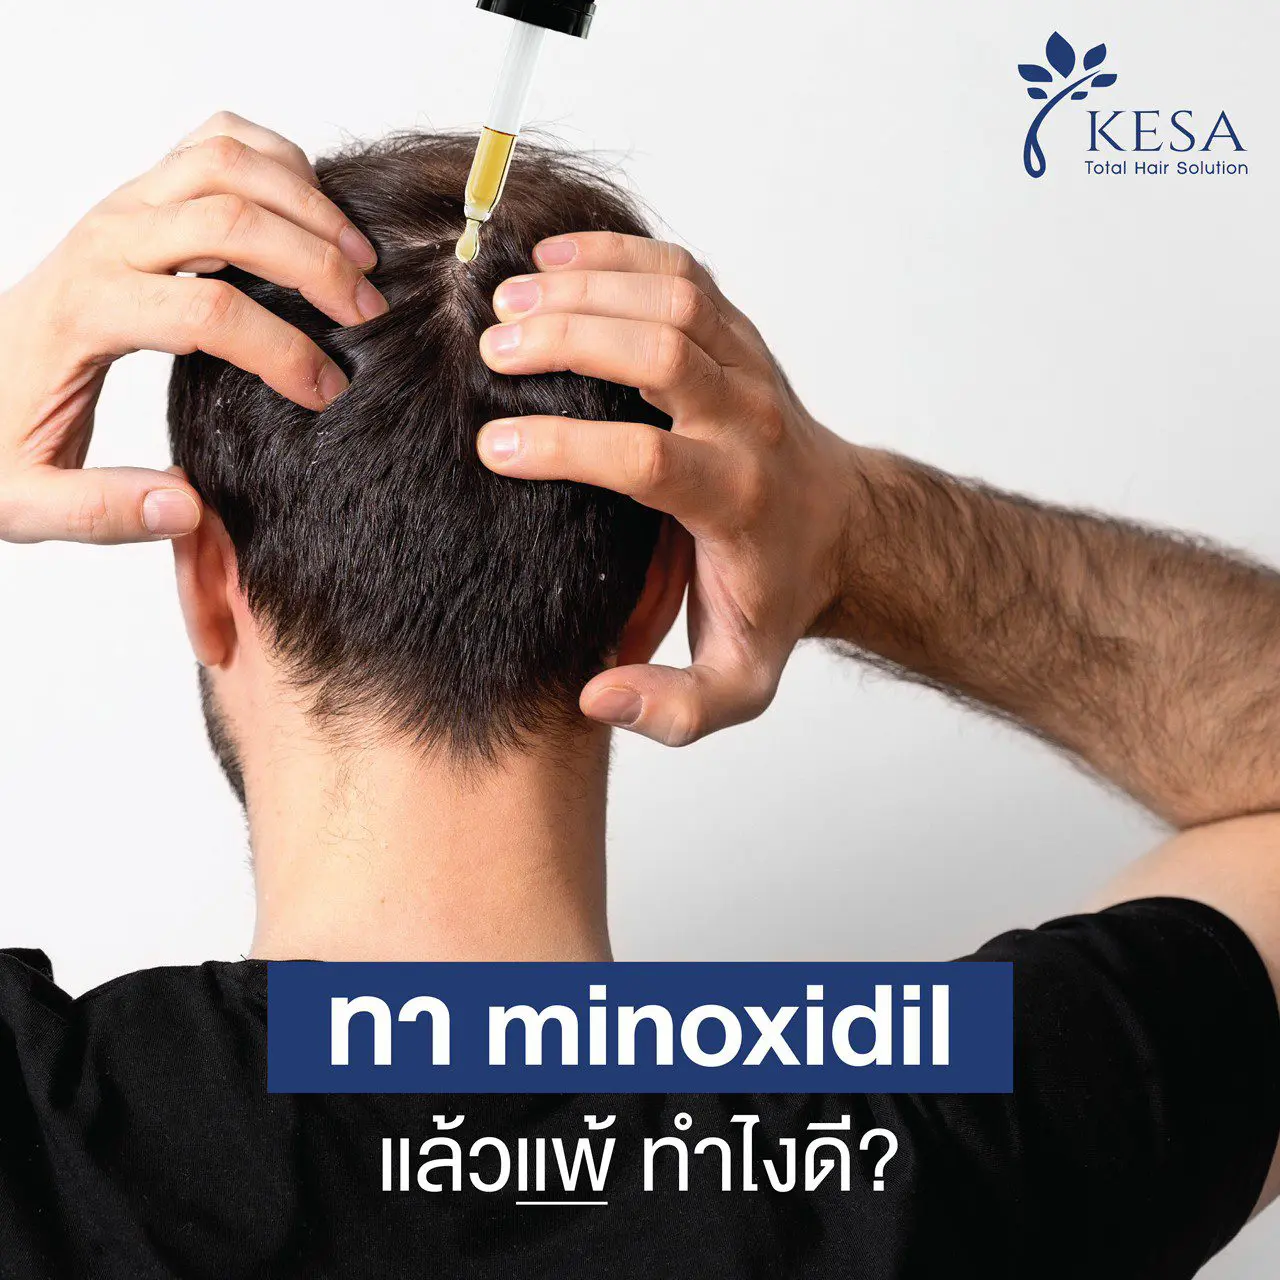 ໃຊ້ Minoxidil ແລະສູນເສຍ, ຂ້ອຍຄວນເຮັດແນວໃດ?